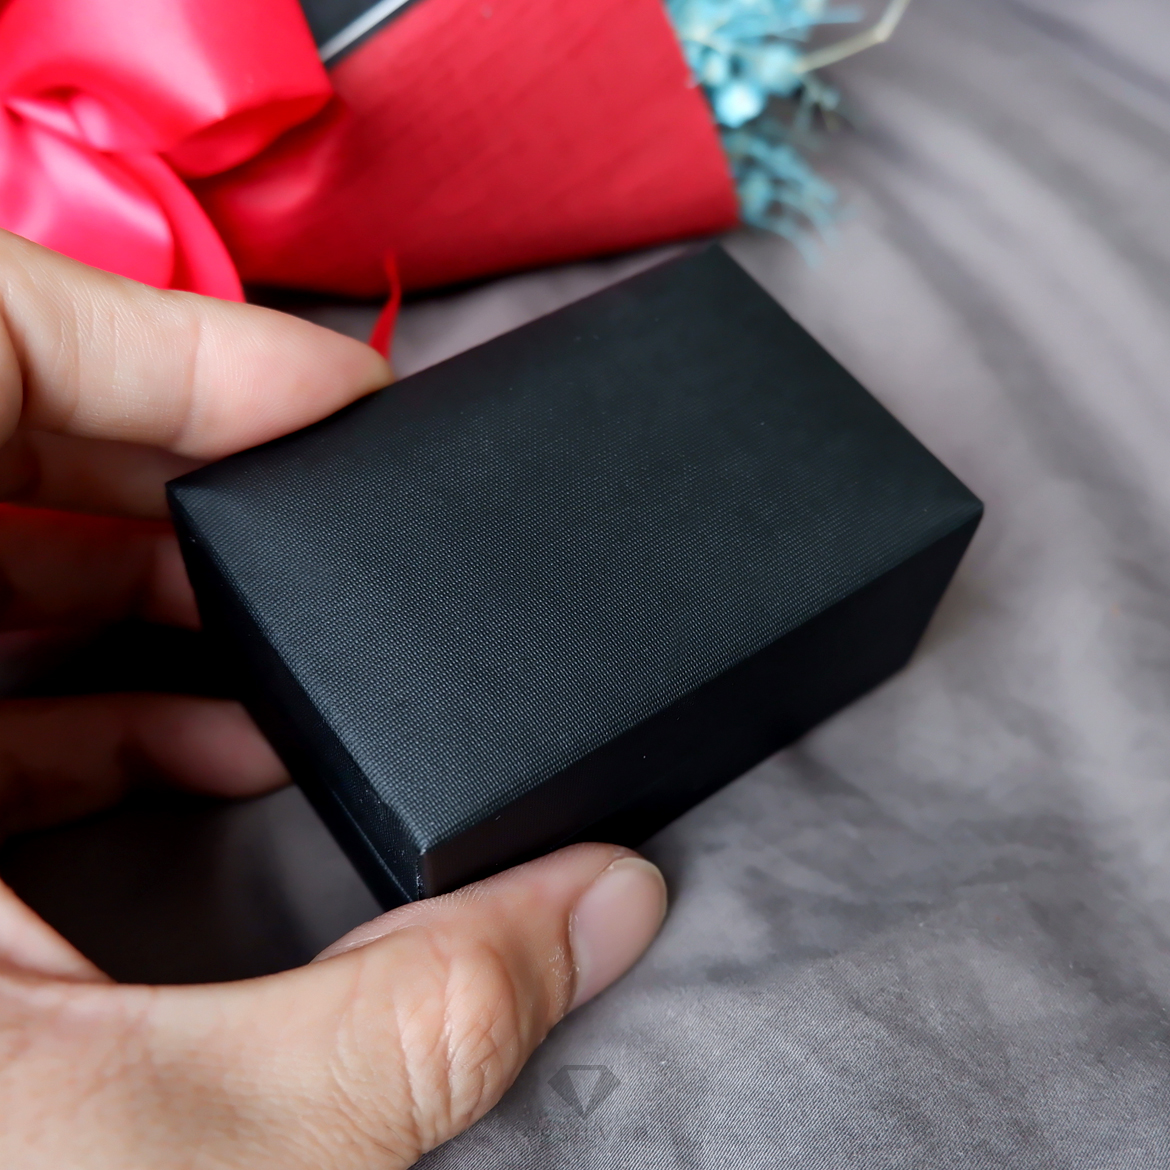 กล่องใส่แหวนสี่เหลี่ยมผืนผ้า บุด้วยหนังแบบนิ่ม สีดำ ภายในสีดำ หรูหรา